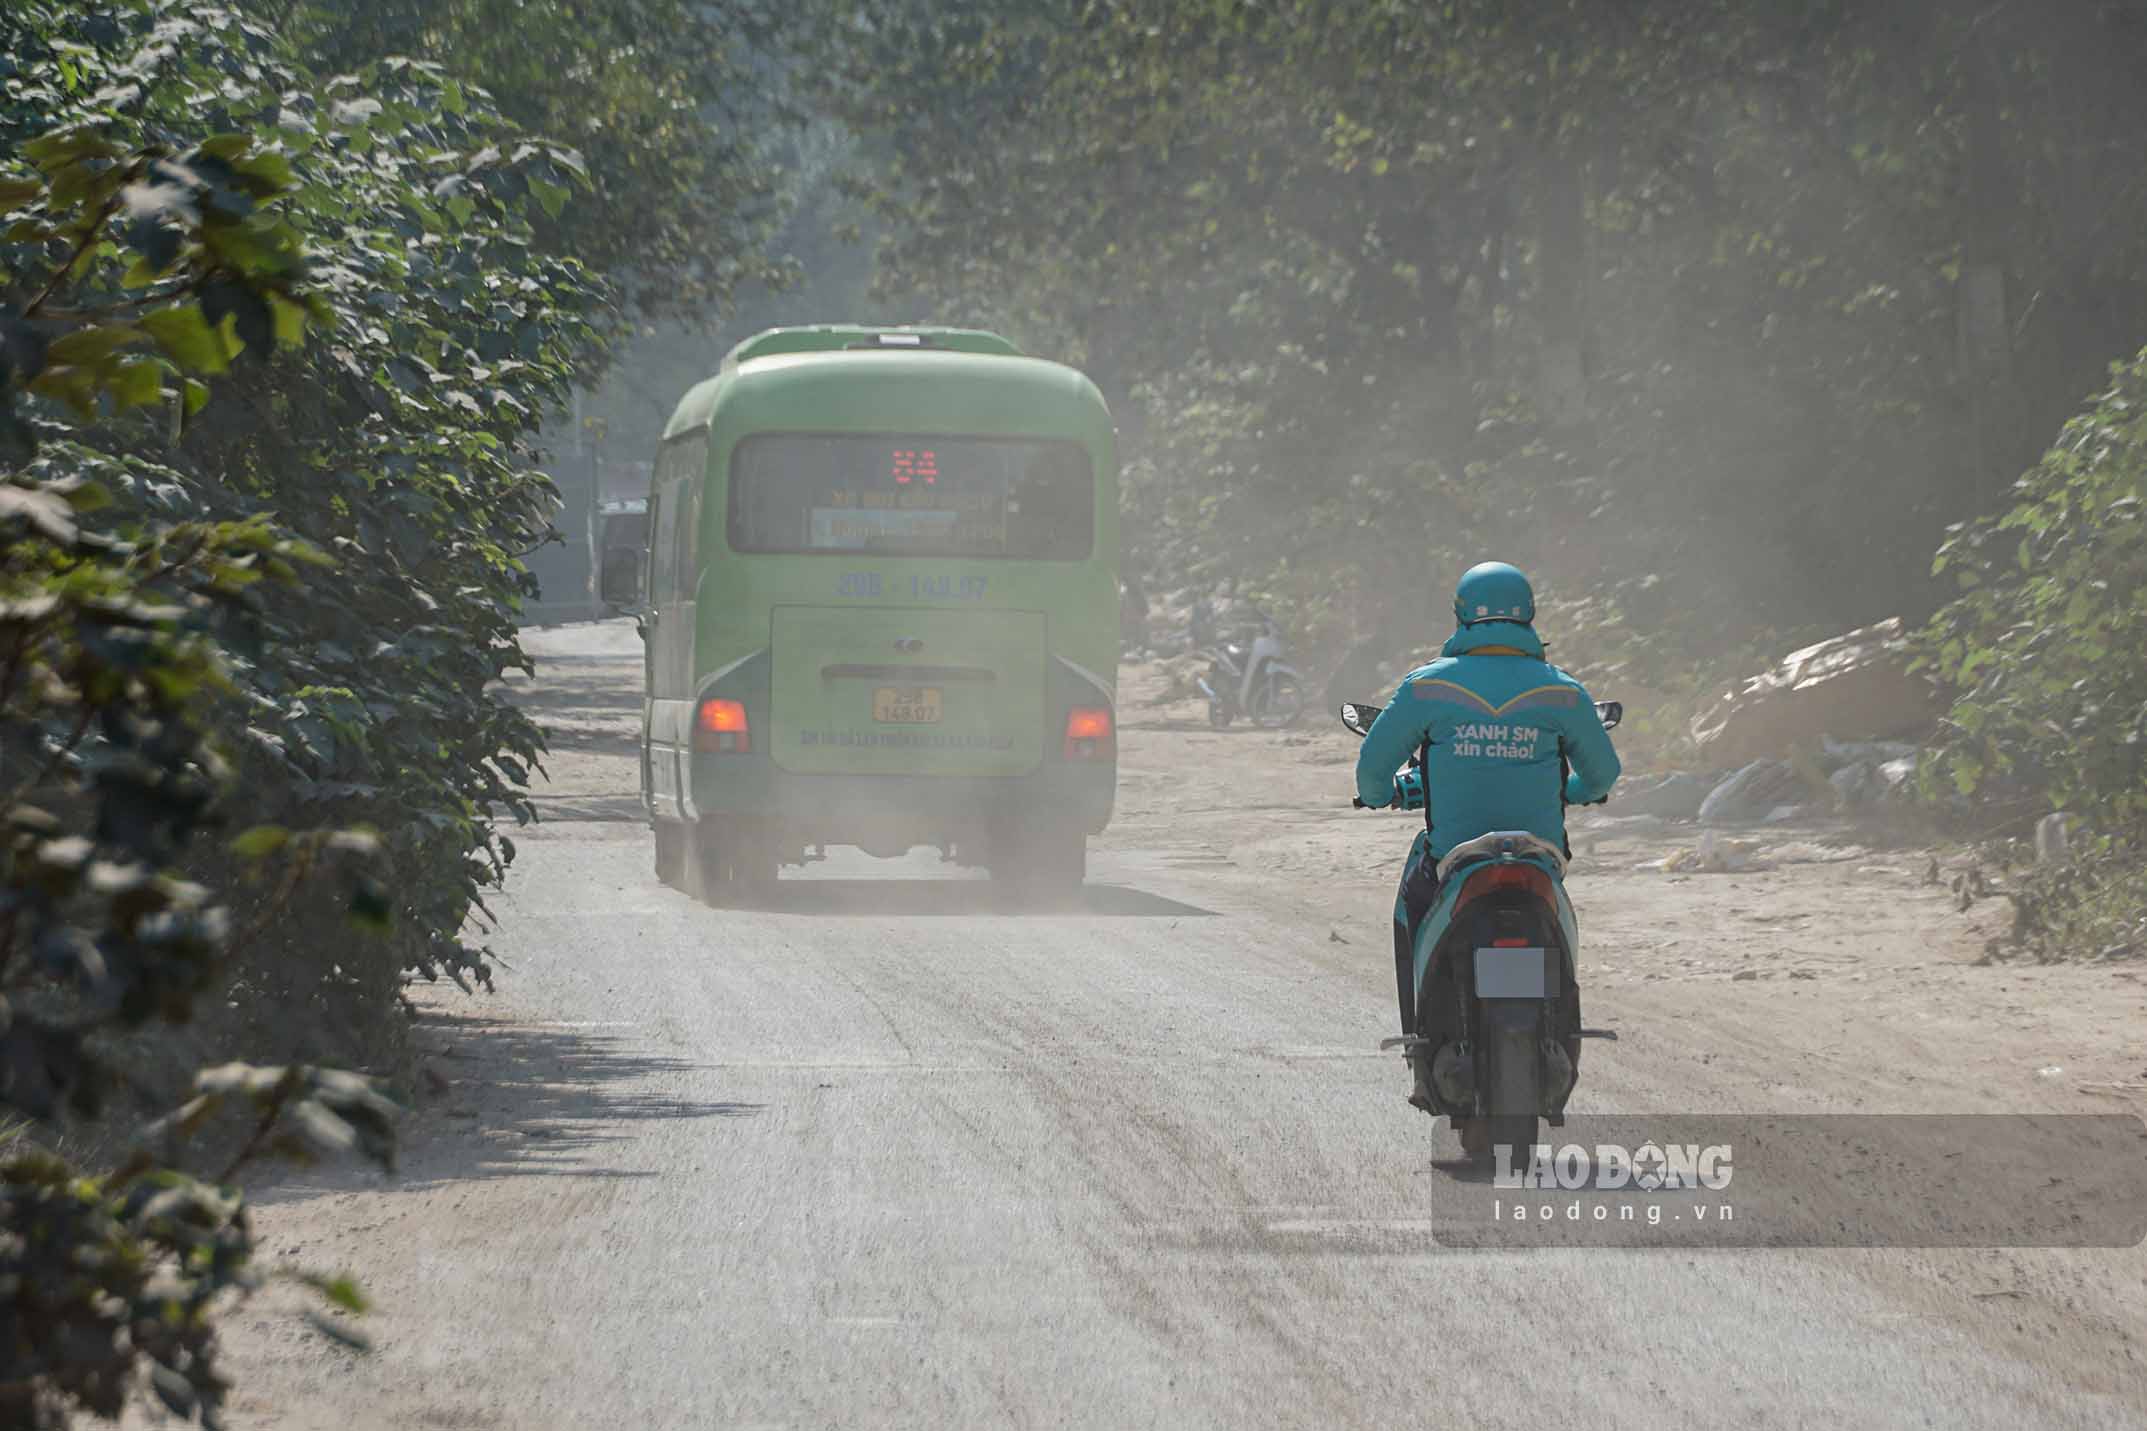 Đoạn đường Nguyễn Cảnh Dị kéo dài được mệnh danh là “con đường đau khổ” bậc nhất tại Hà Nội vì khiến việc đi lại của người dân trở nên rất khó khăn, vất vả suốt nhiều năm qua.